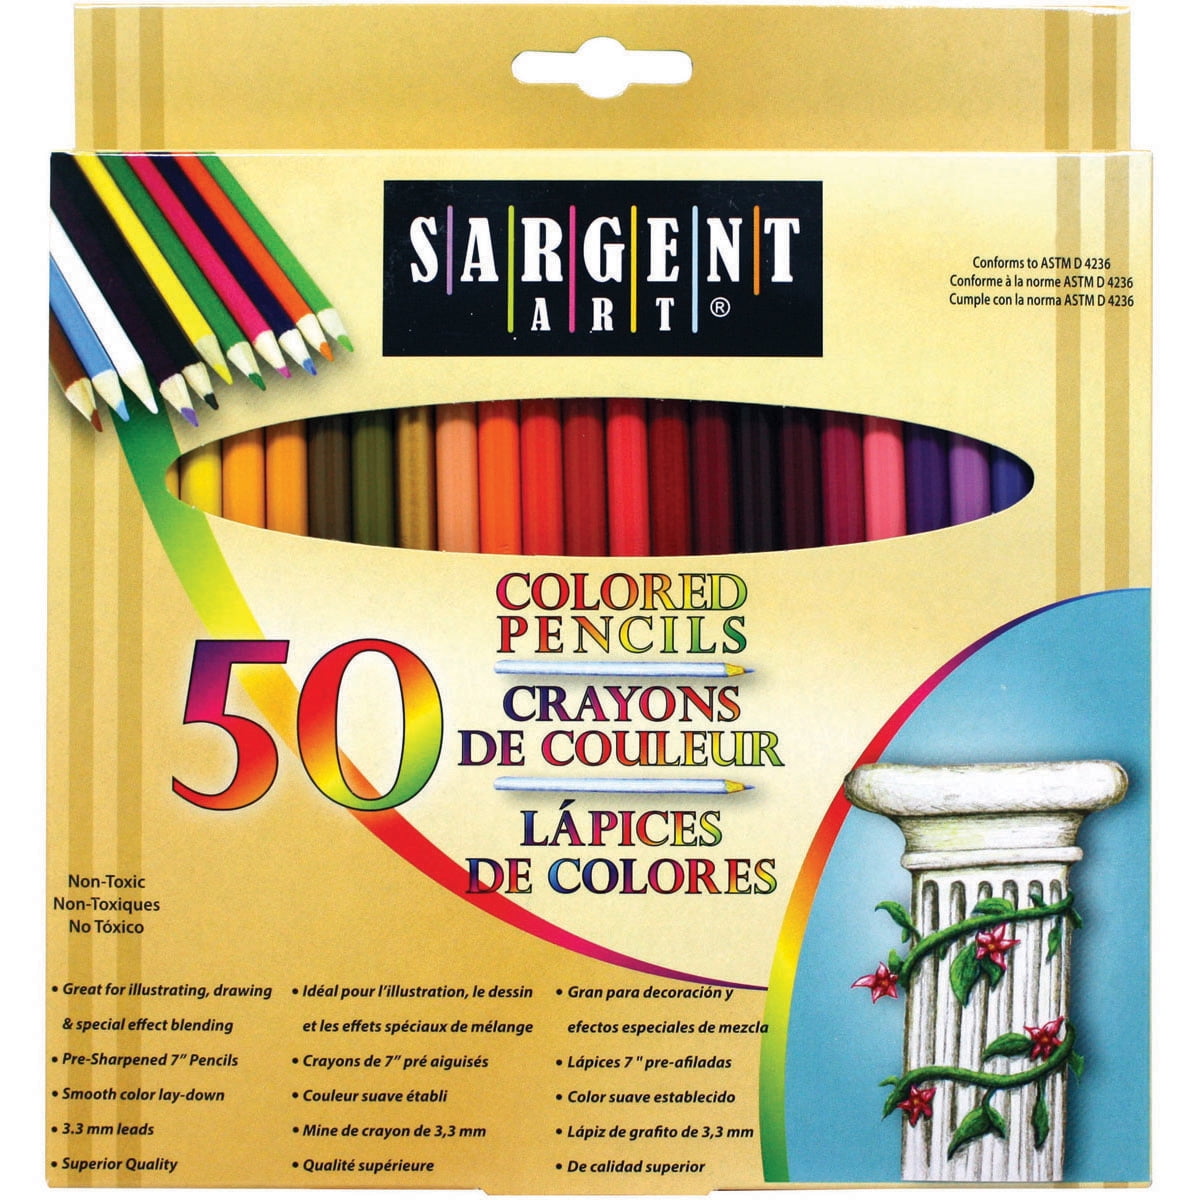 Sargent Art Colored Pencils, 50 Count - Walmart.com